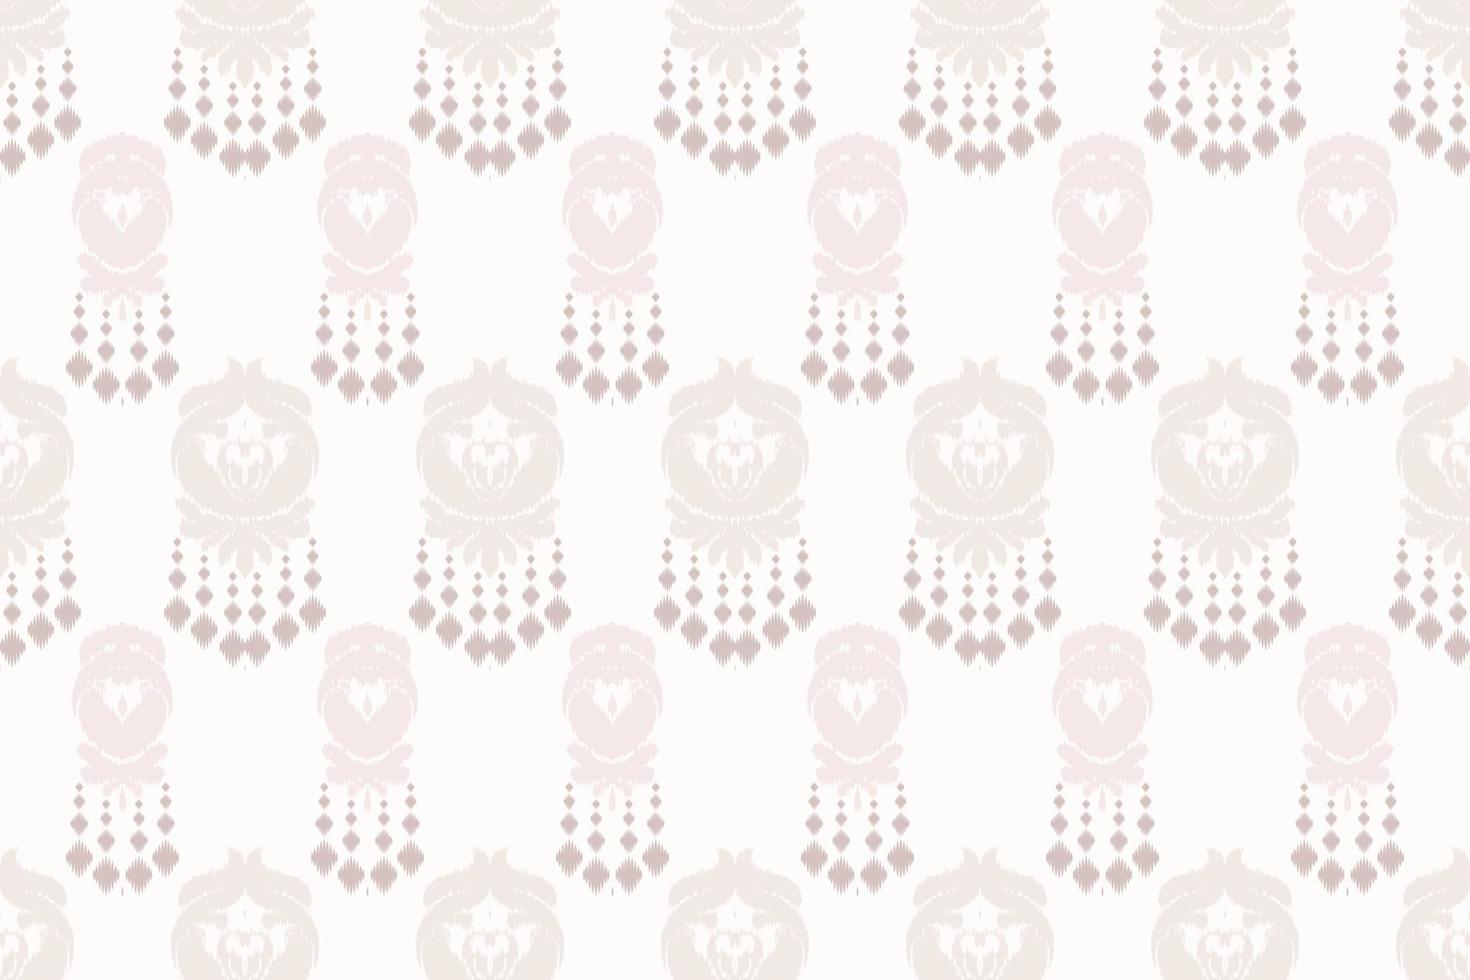 ikkat eller ikat Ränder batik textil- sömlös mönster digital vektor design för skriva ut saree kurti borneo tyg gräns borsta symboler färgrutor bomull